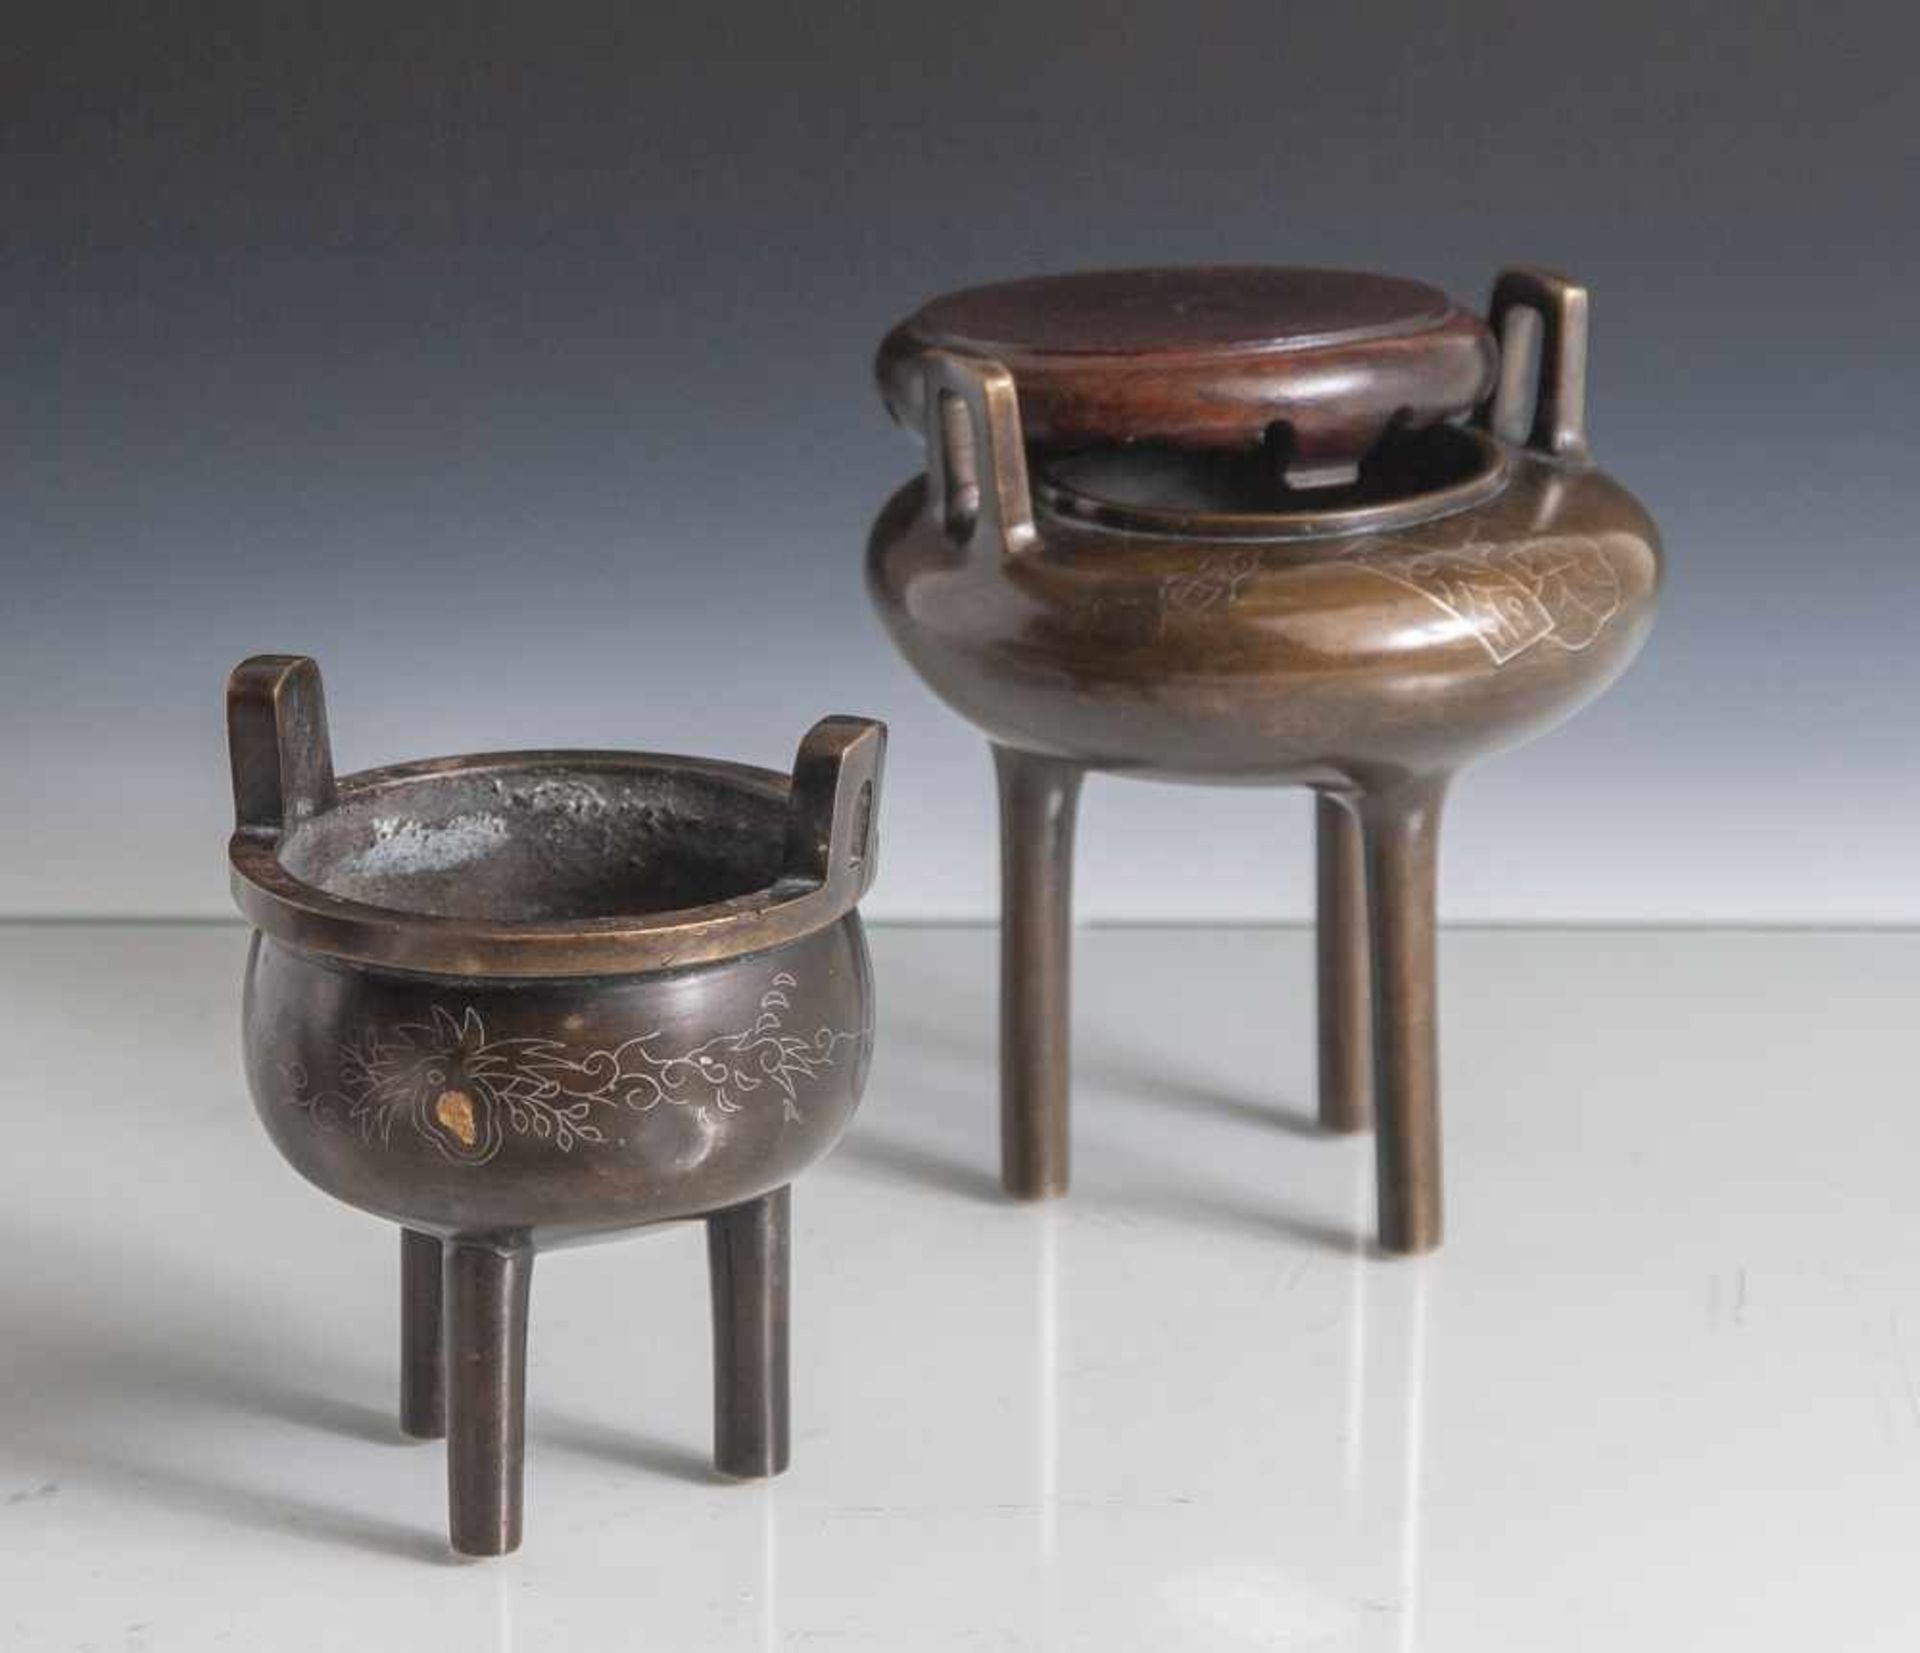 Zwei Weihrauchbrenner in Ding-Form, China, wohl 19. Jahrhundert, Bronze mit feiner